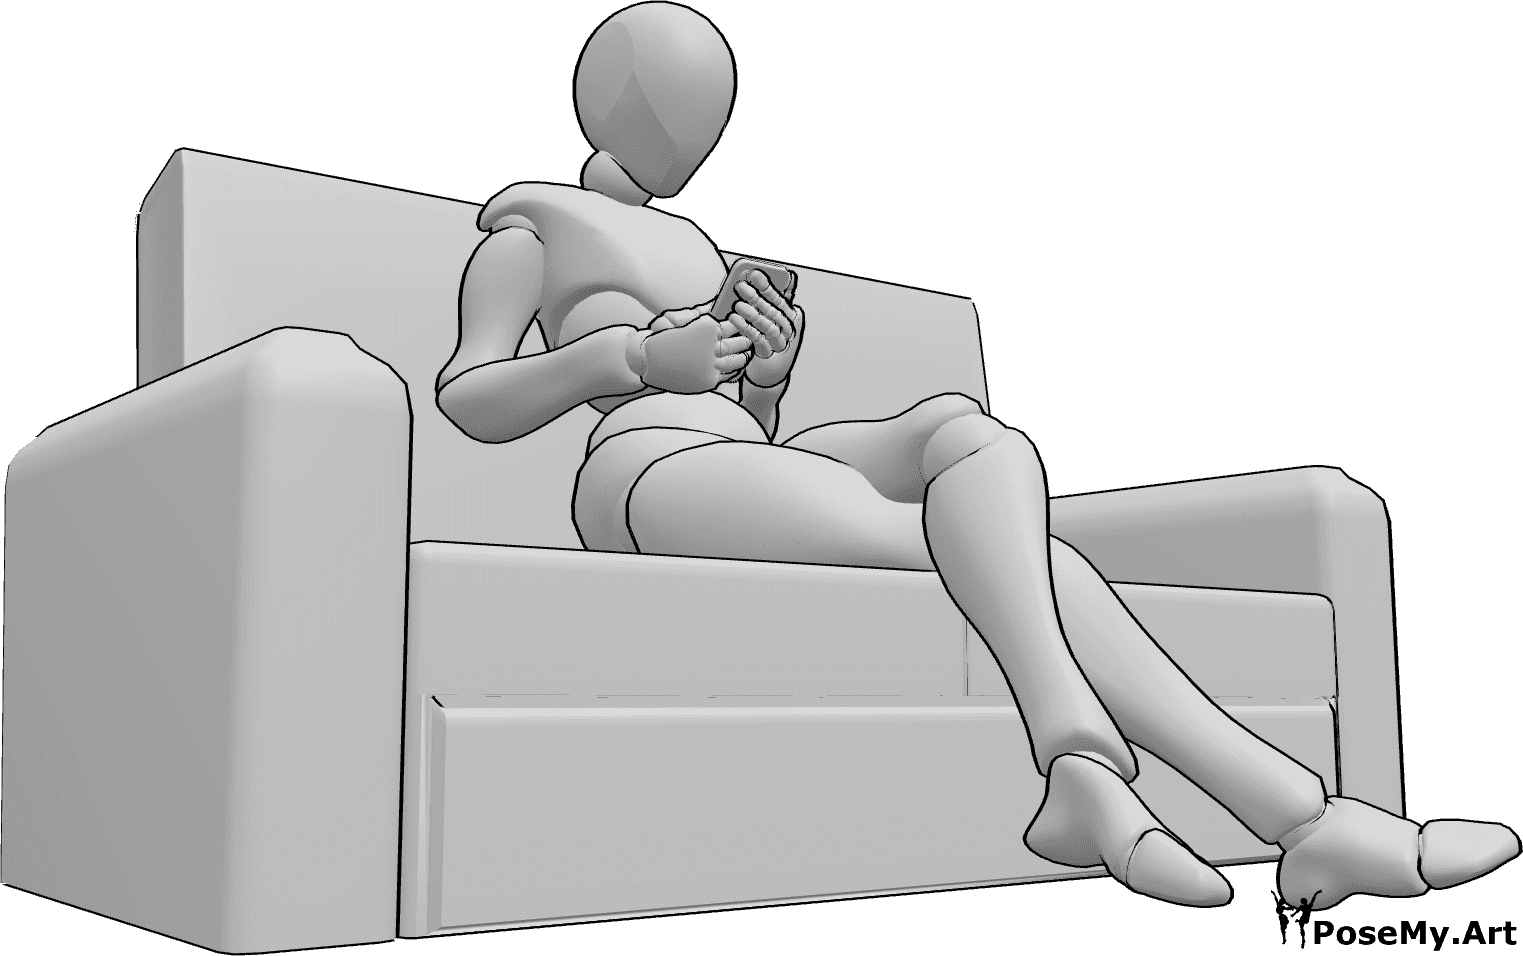 Referencia de poses- Postura sentada sosteniendo el teléfono - Mujer sentada con las piernas cruzadas en el sofá, sosteniendo su teléfono con ambas manos.